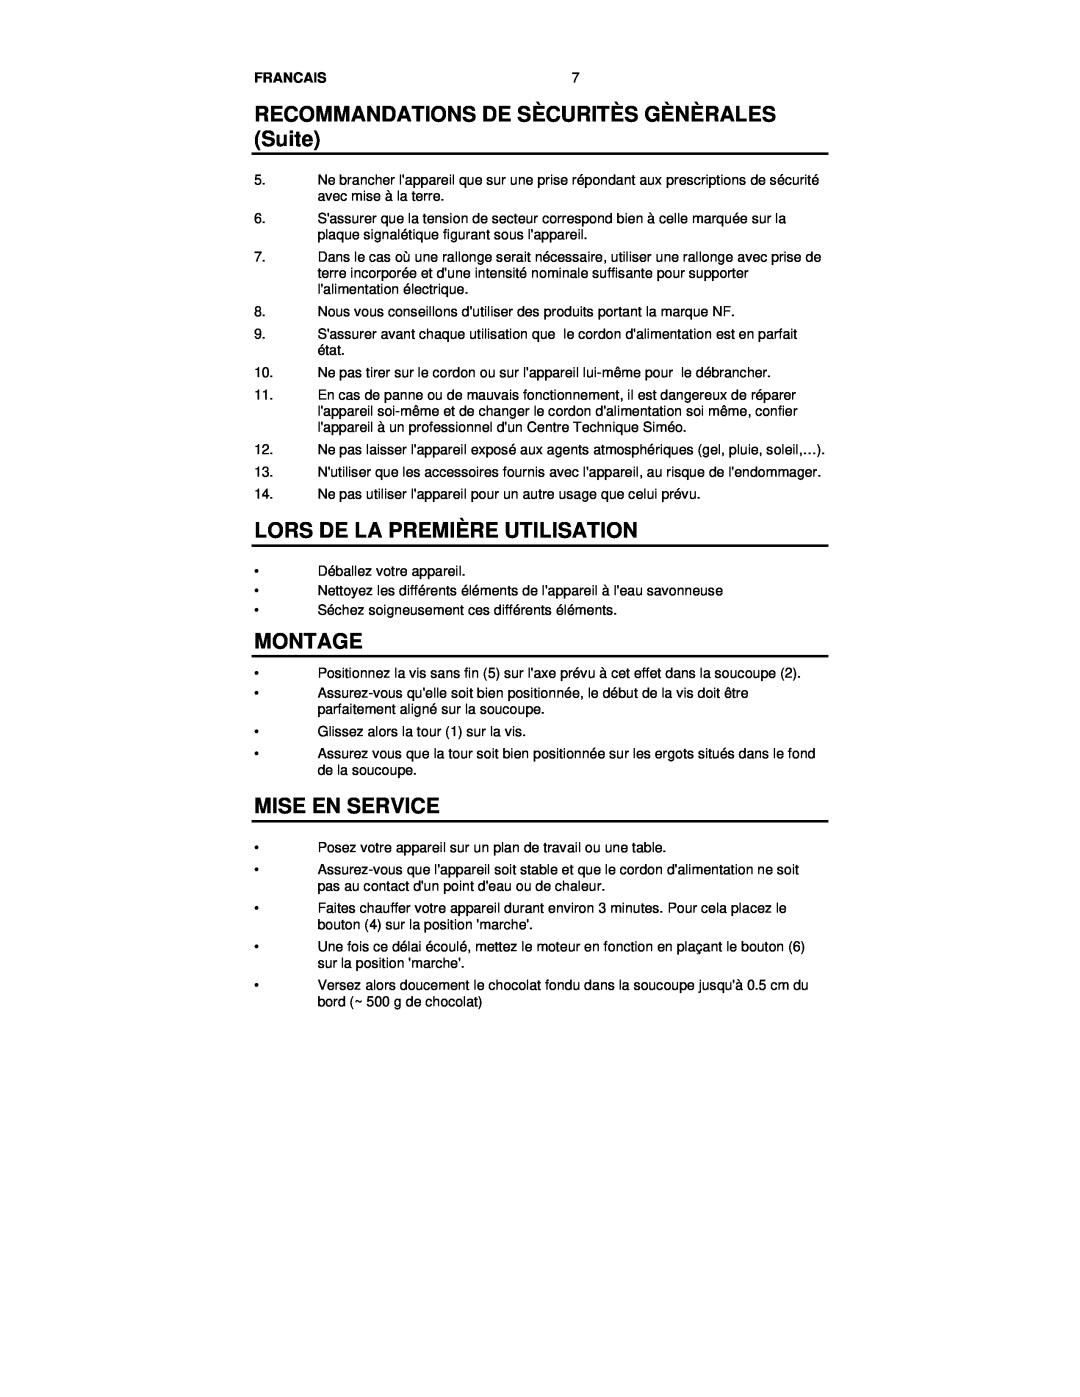 Nostalgia Electrics RFF-500 manual RECOMMANDATIONS DE SÈCURITÈS GÈNÈRALES Suite, Lors De La Première Utilisation, Montage 